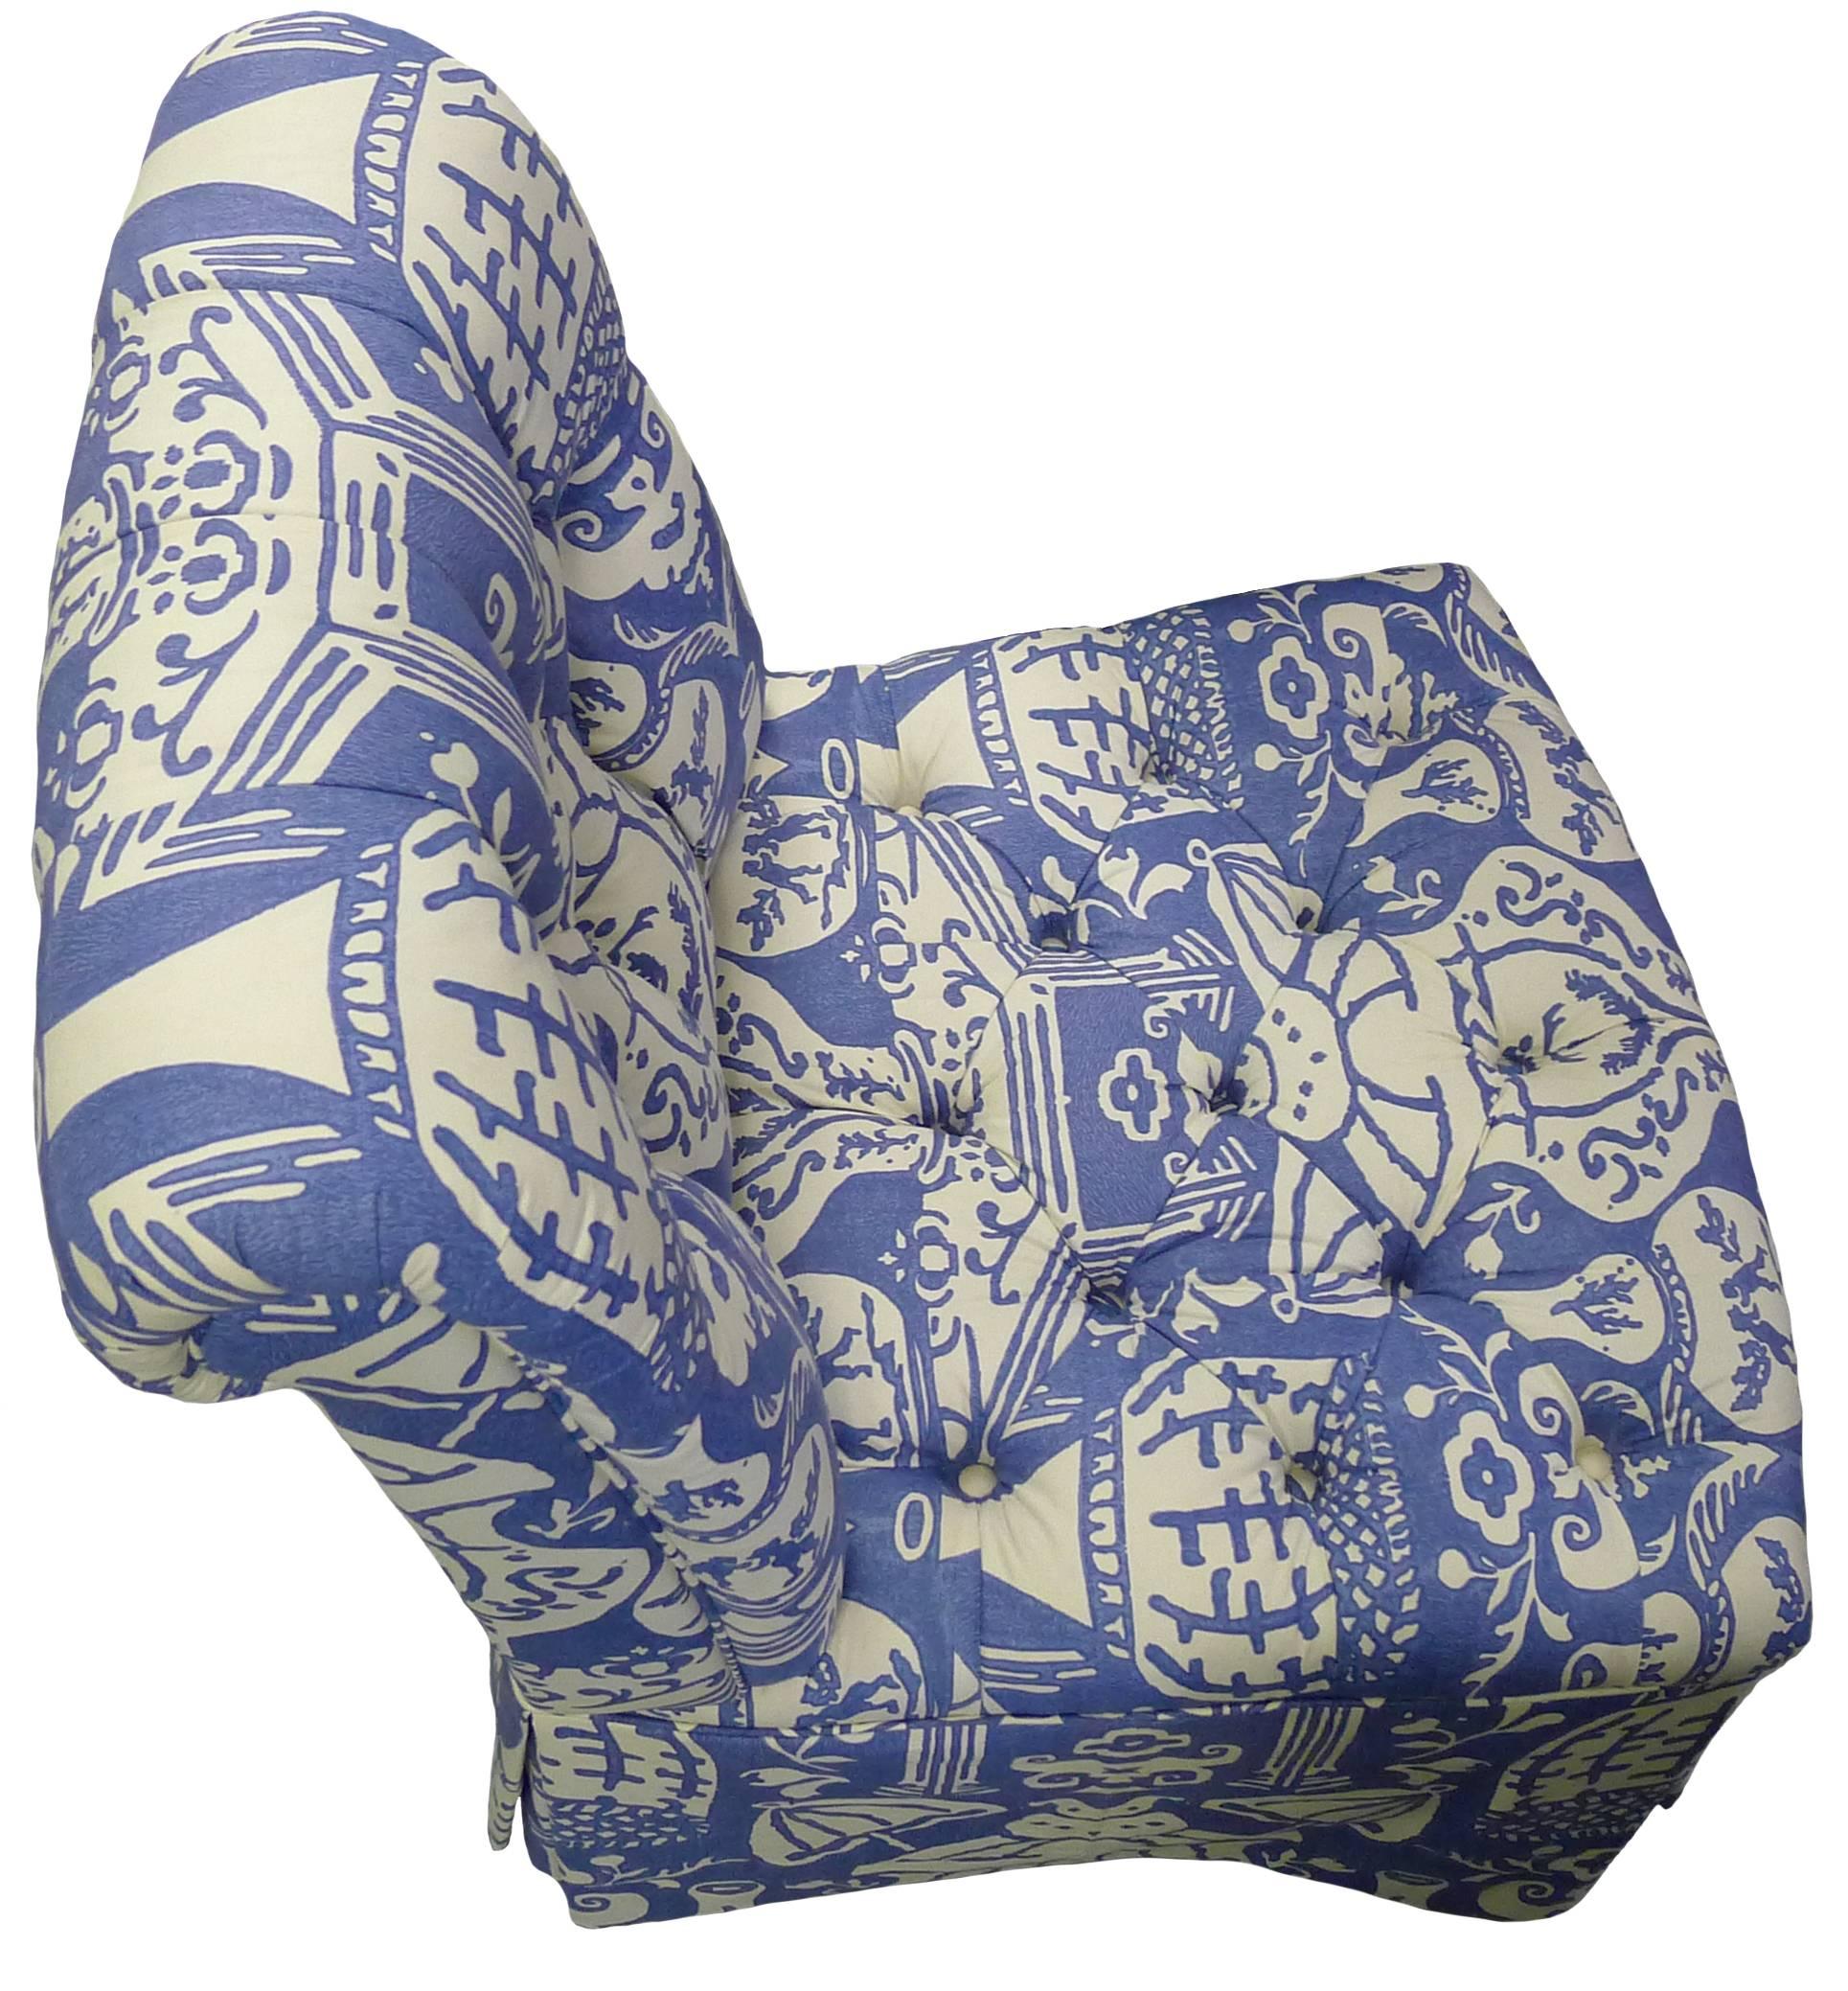 David Hicks the Vase Blue Upholstered Slipper Chair (amerikanisch)